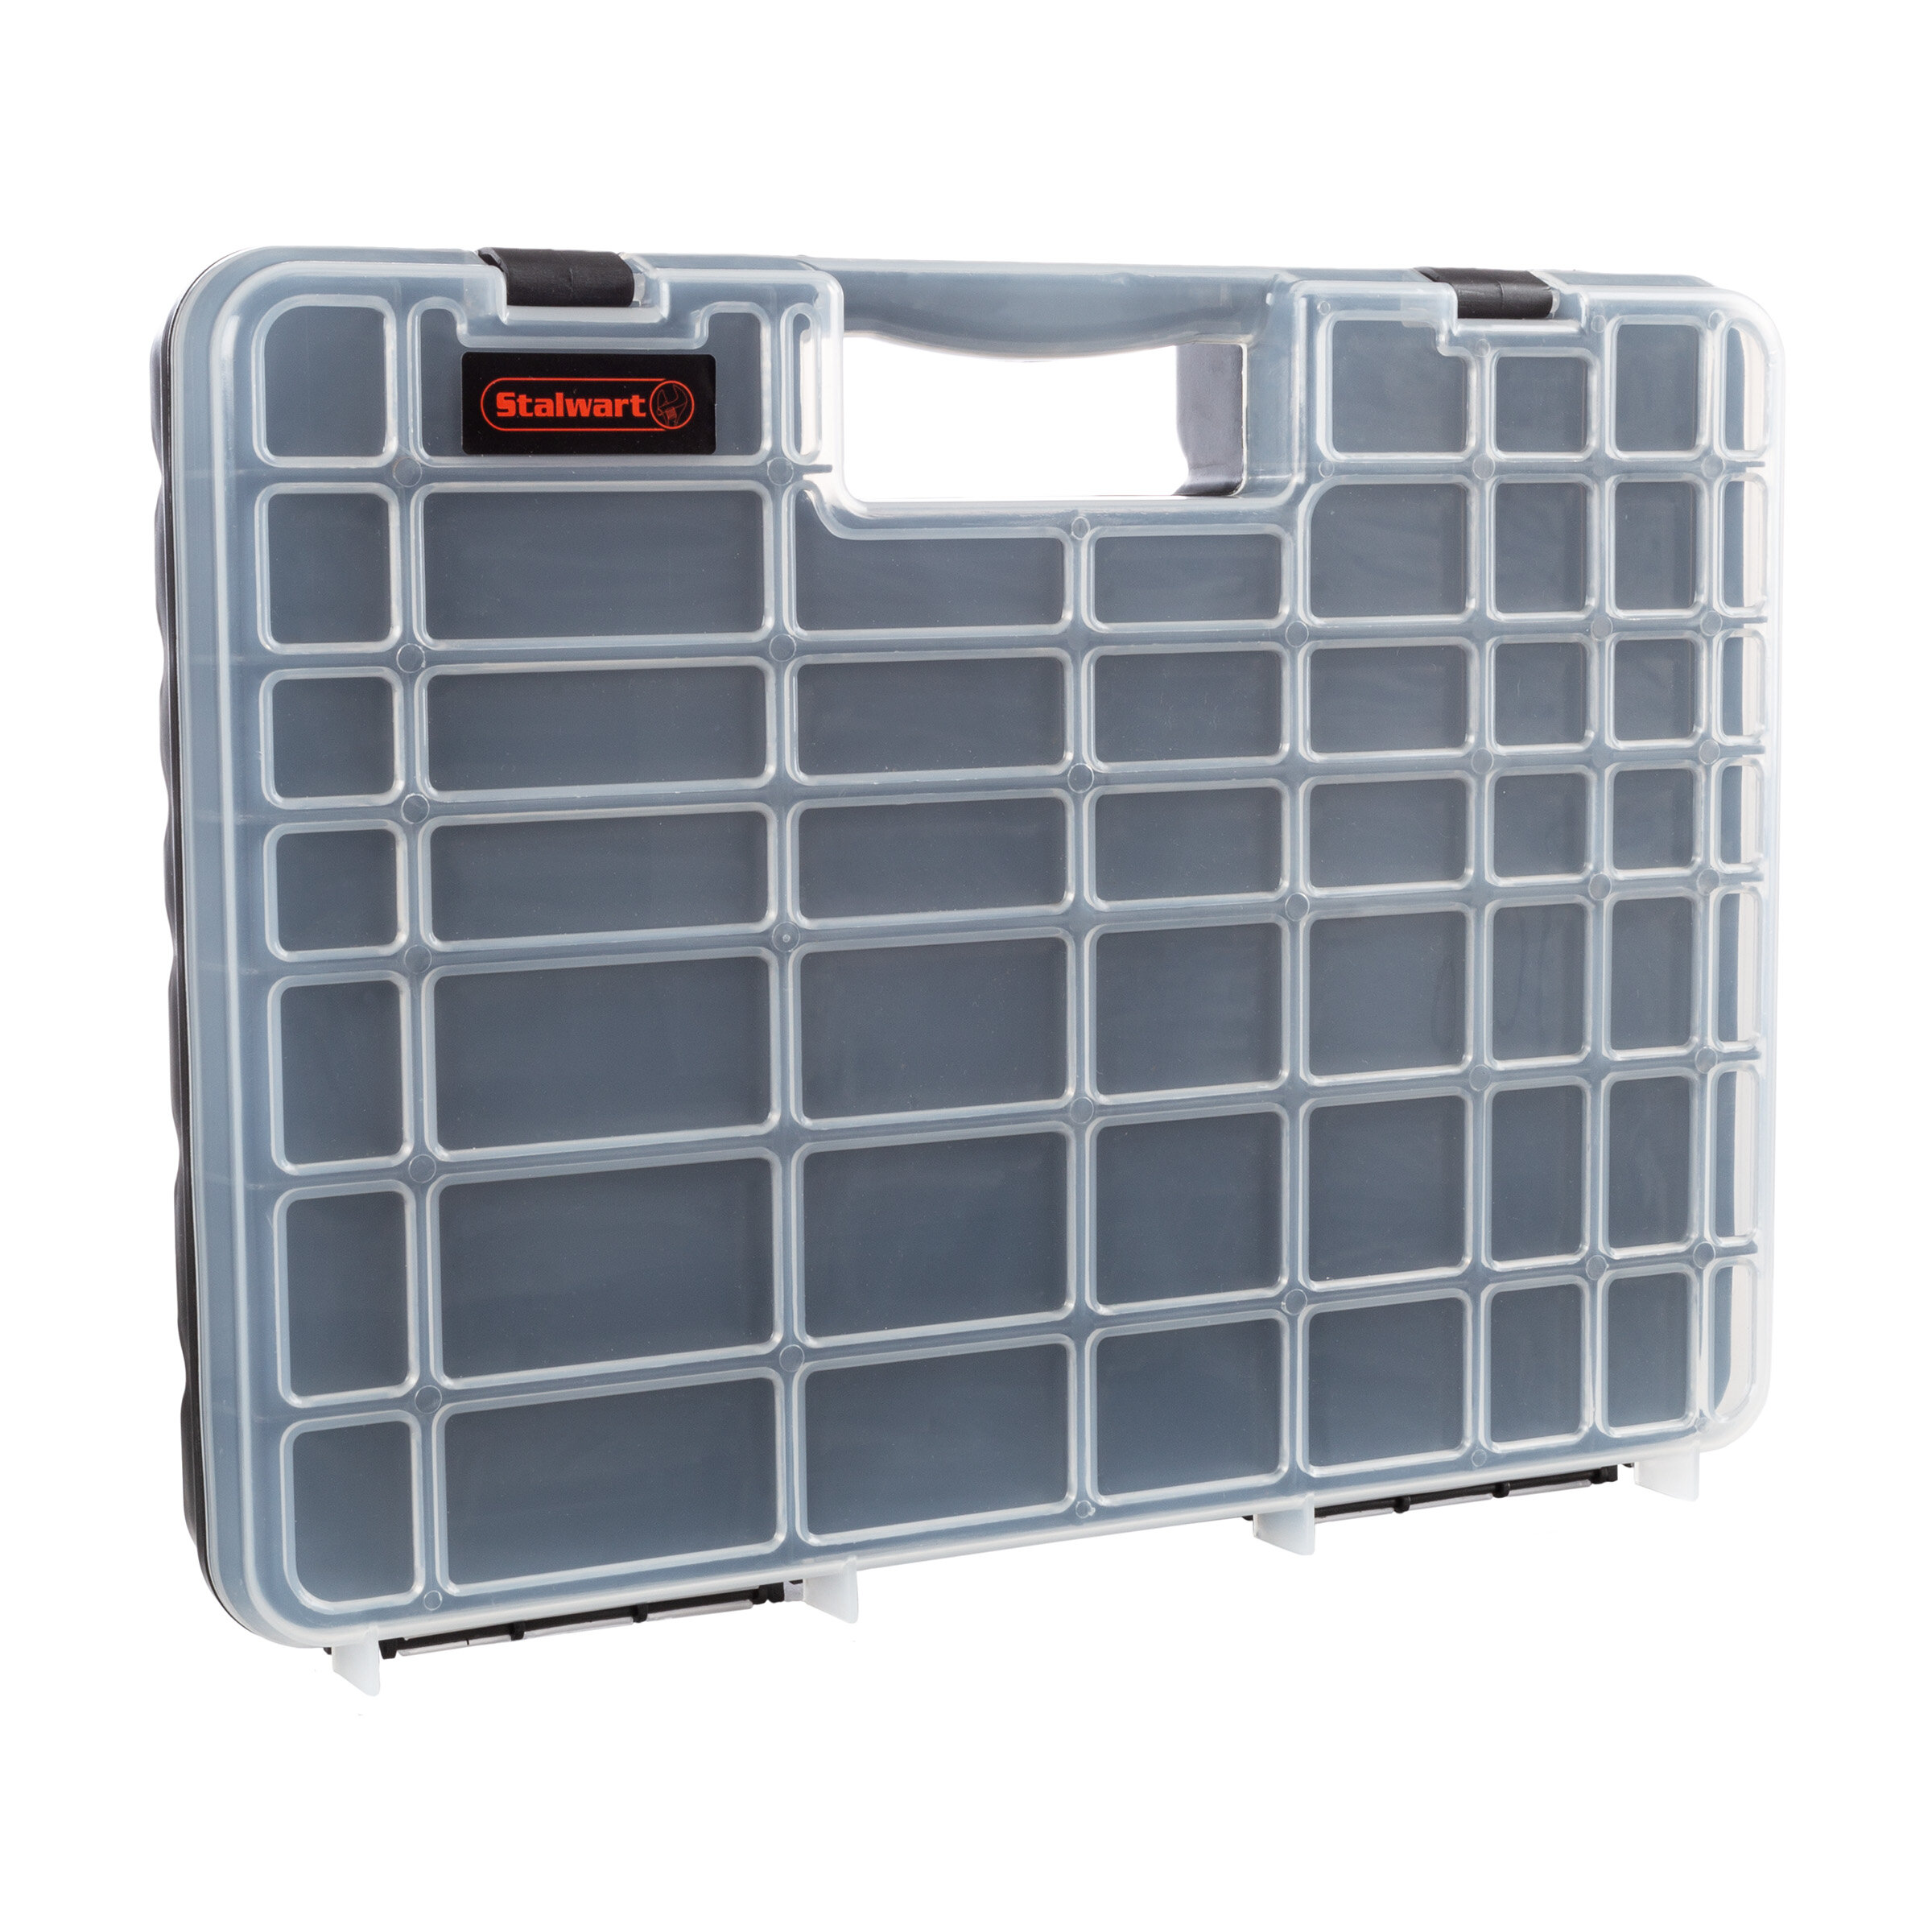 Stalwart Wakeman Tackle Box Organizer - Durable Plastic Storage Tacklebox -  Camping, Fishing, Craft Supplies & Reviews